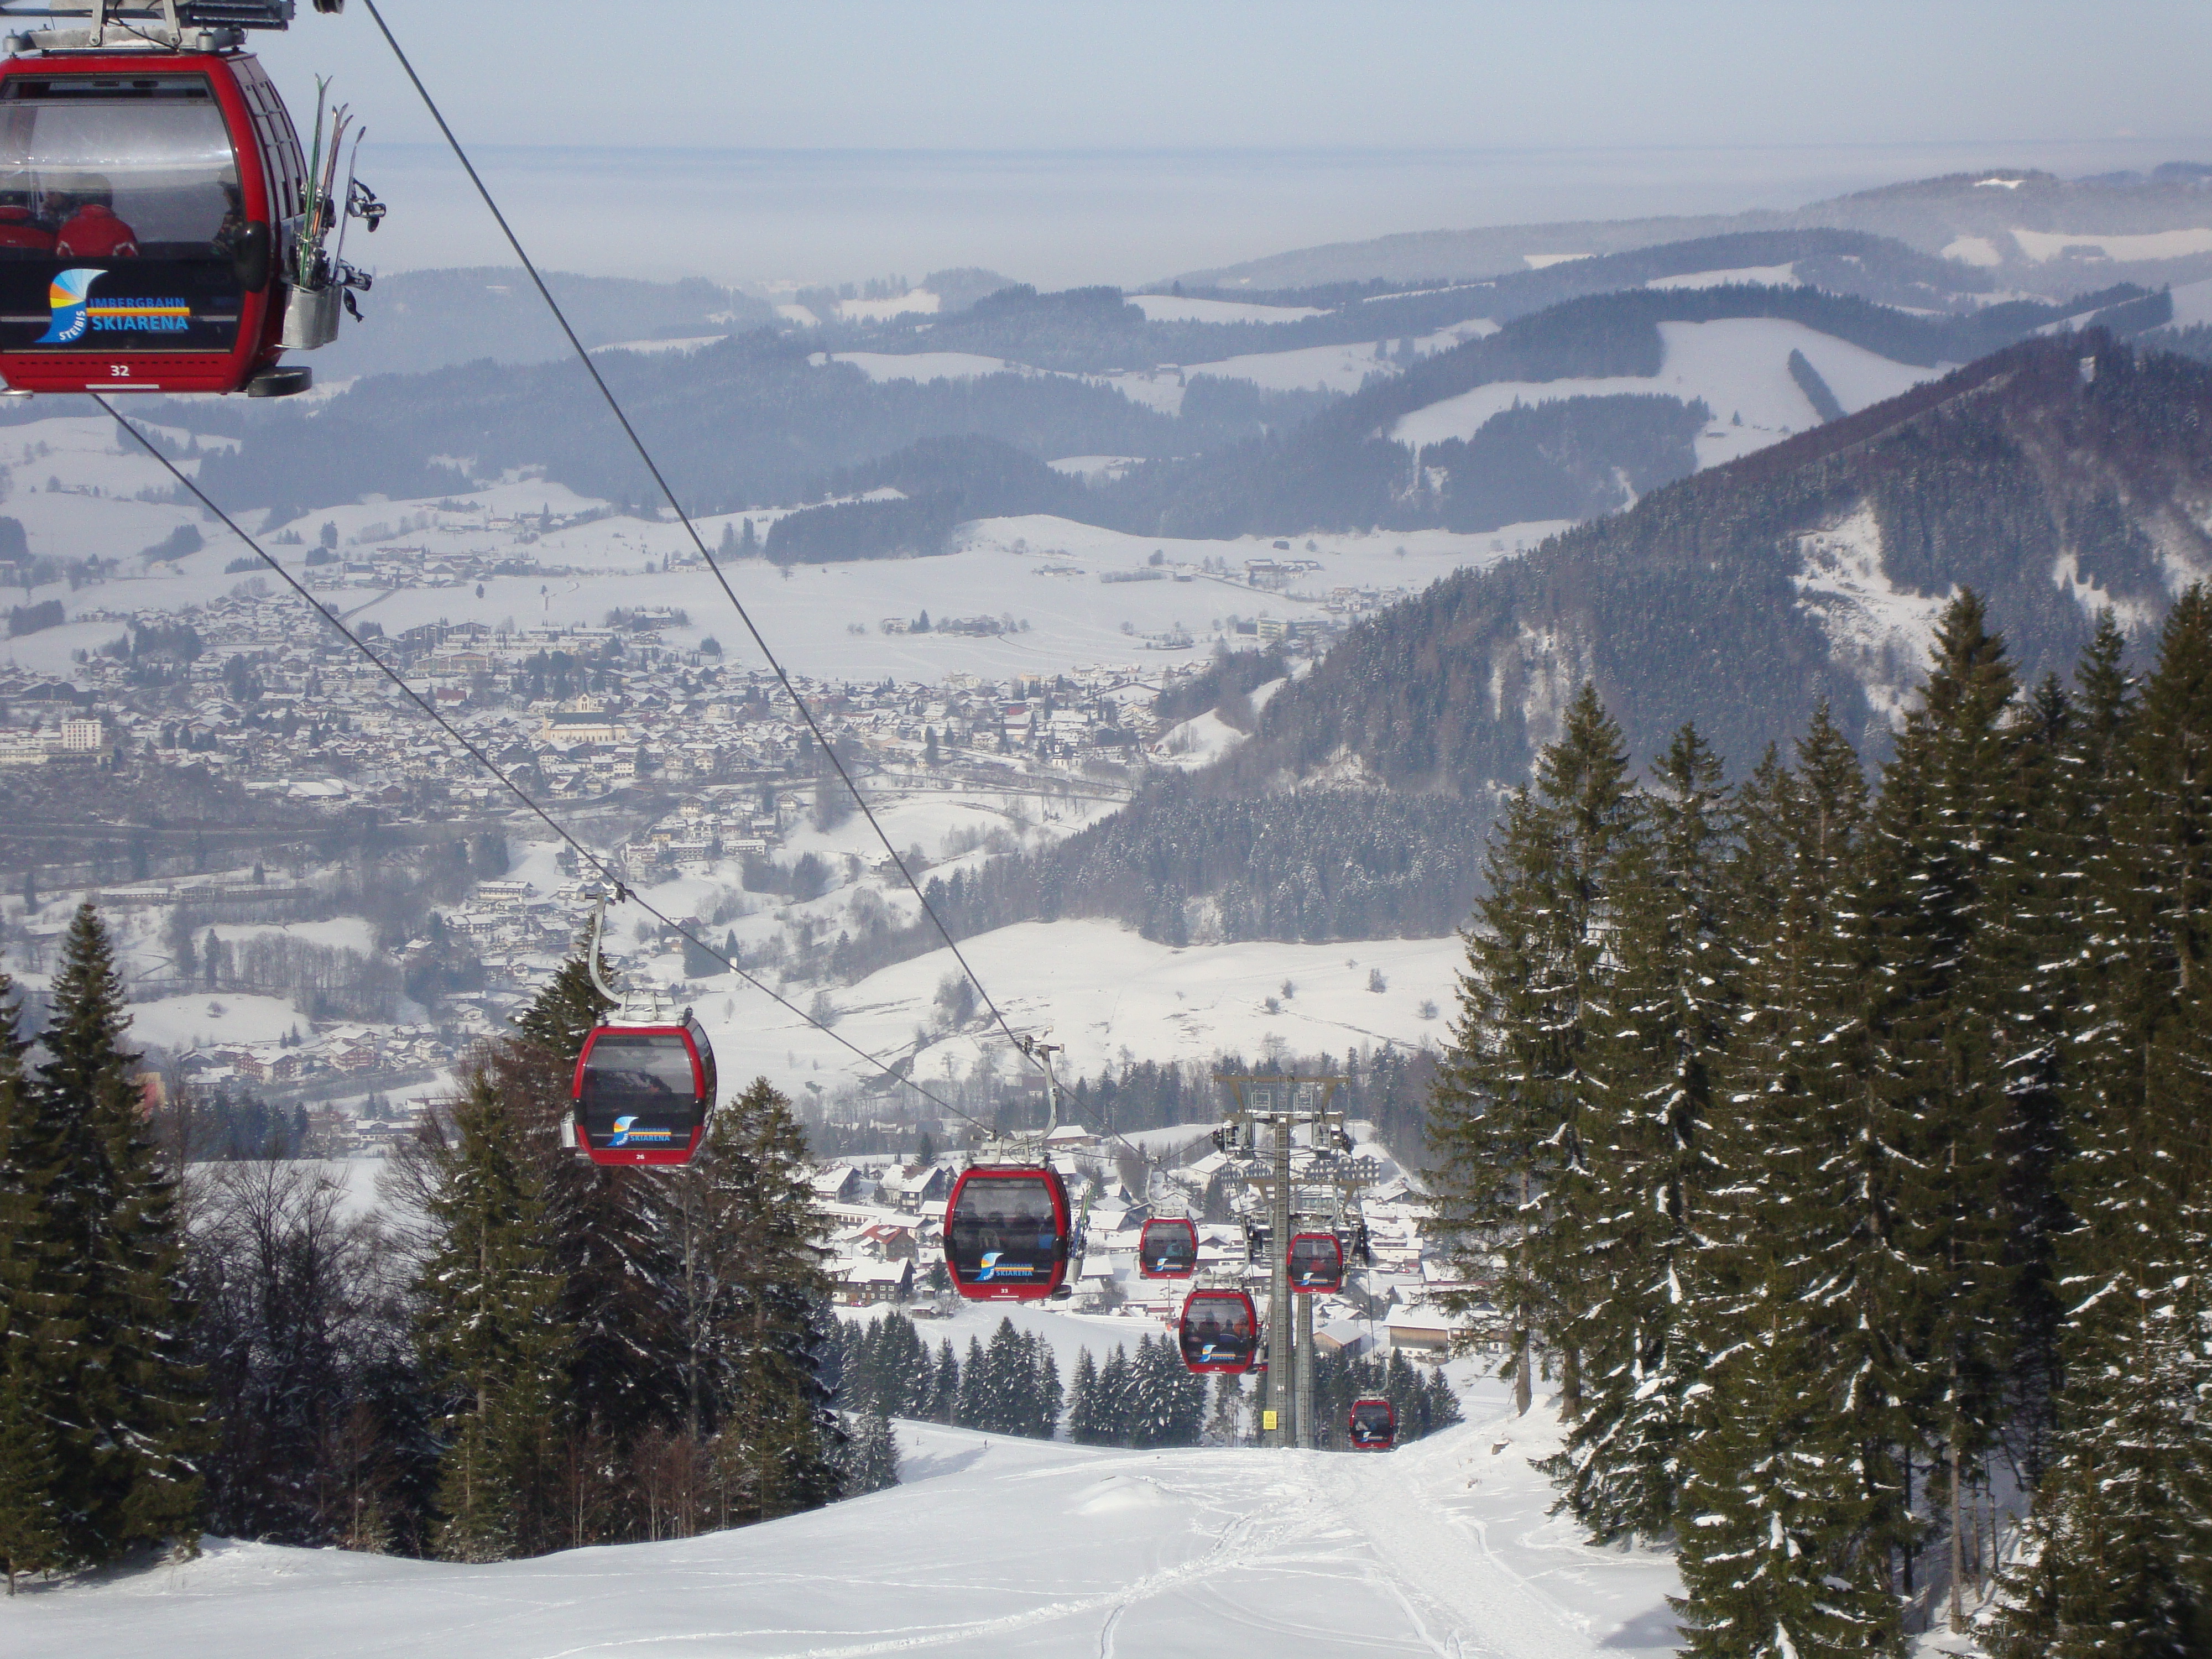 A little gem in the German ski world, Oberstaufen